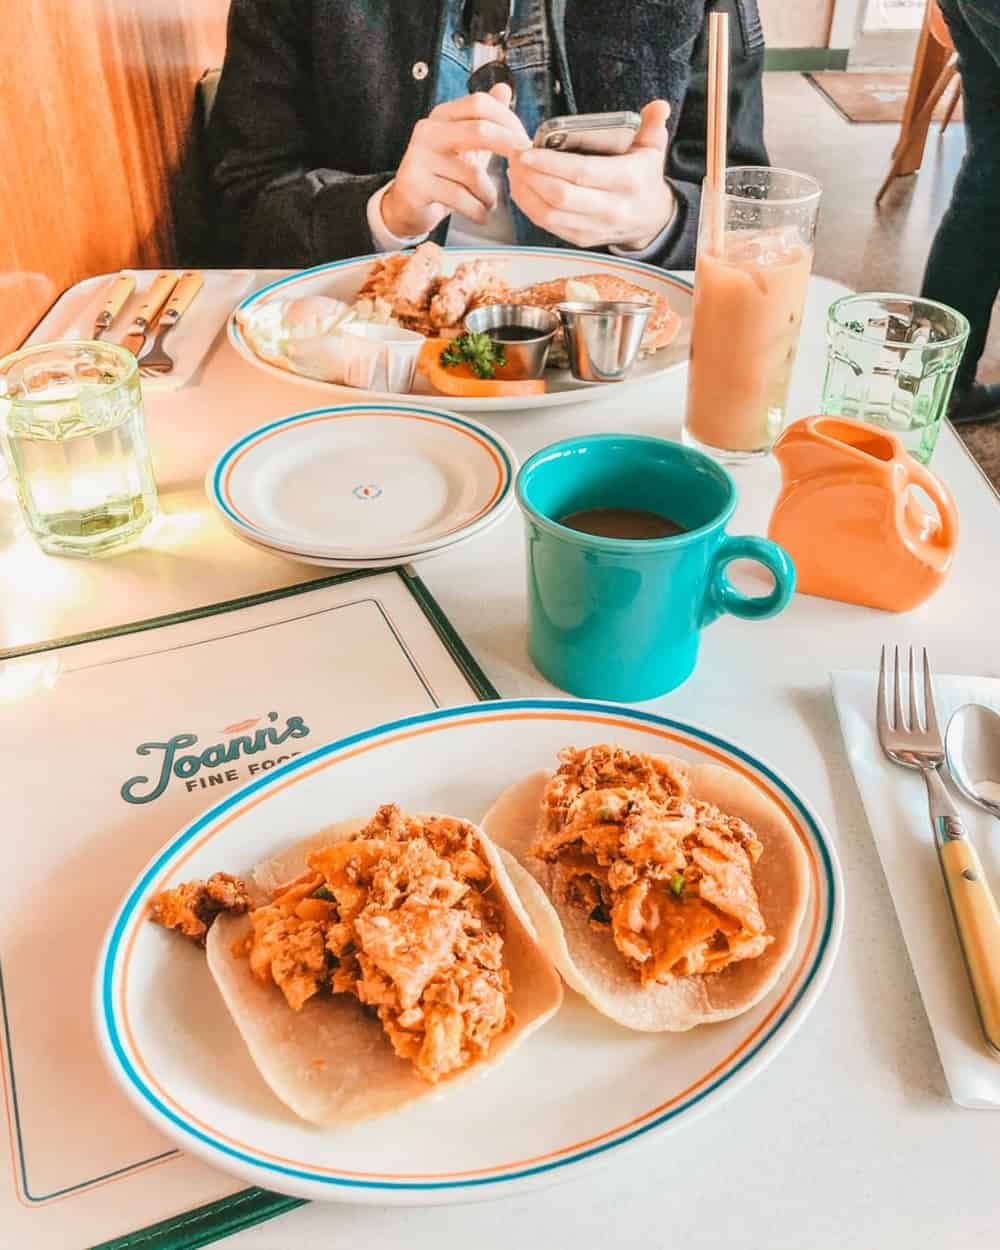 Joann's Fine Foods breakfast tacos in Austin